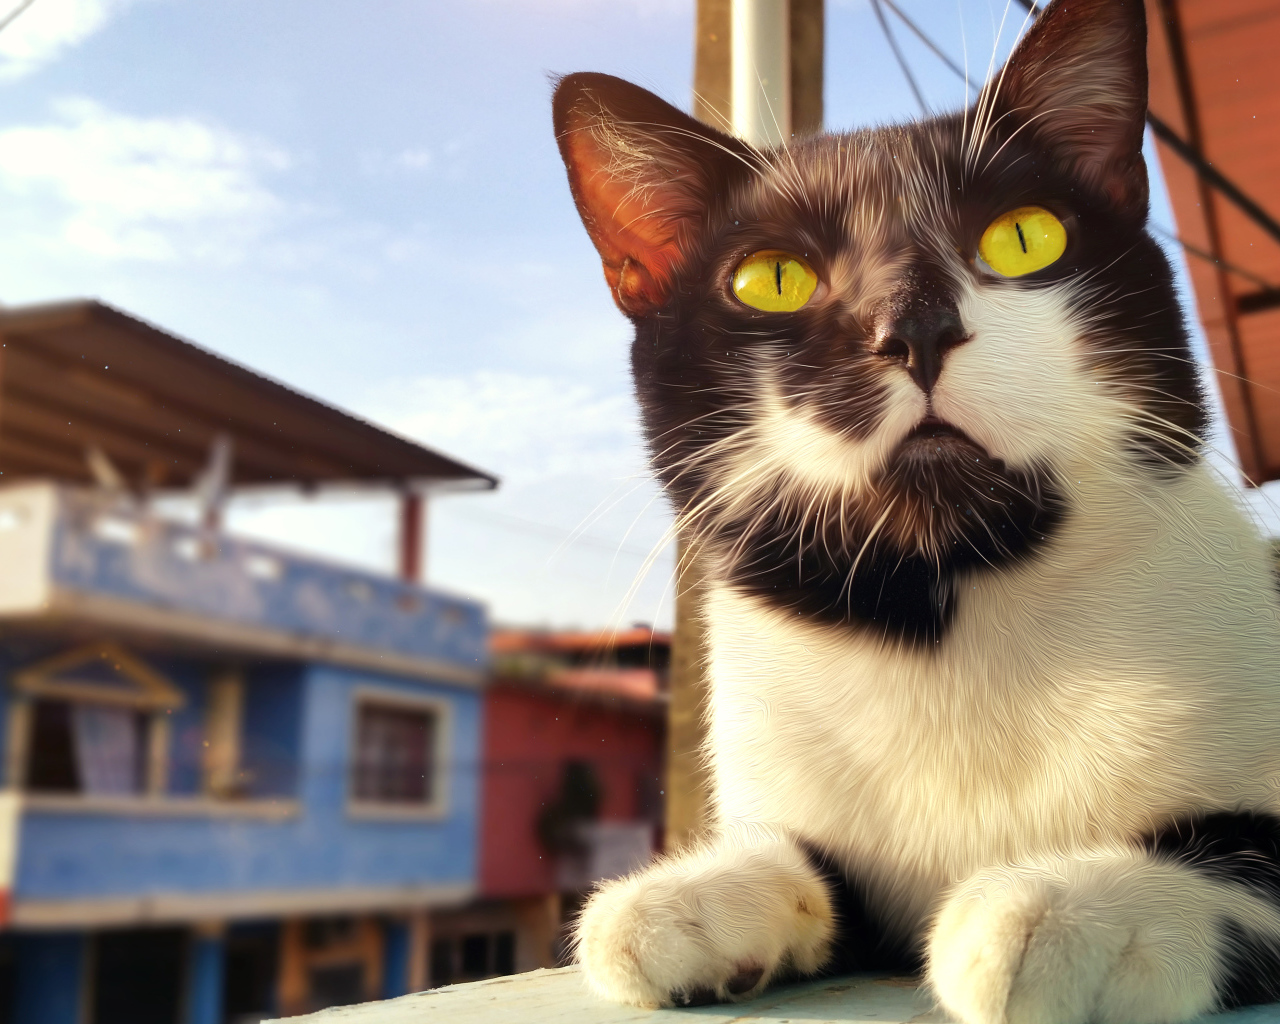 Красивый черно-белый кот с большими желтыми глазами